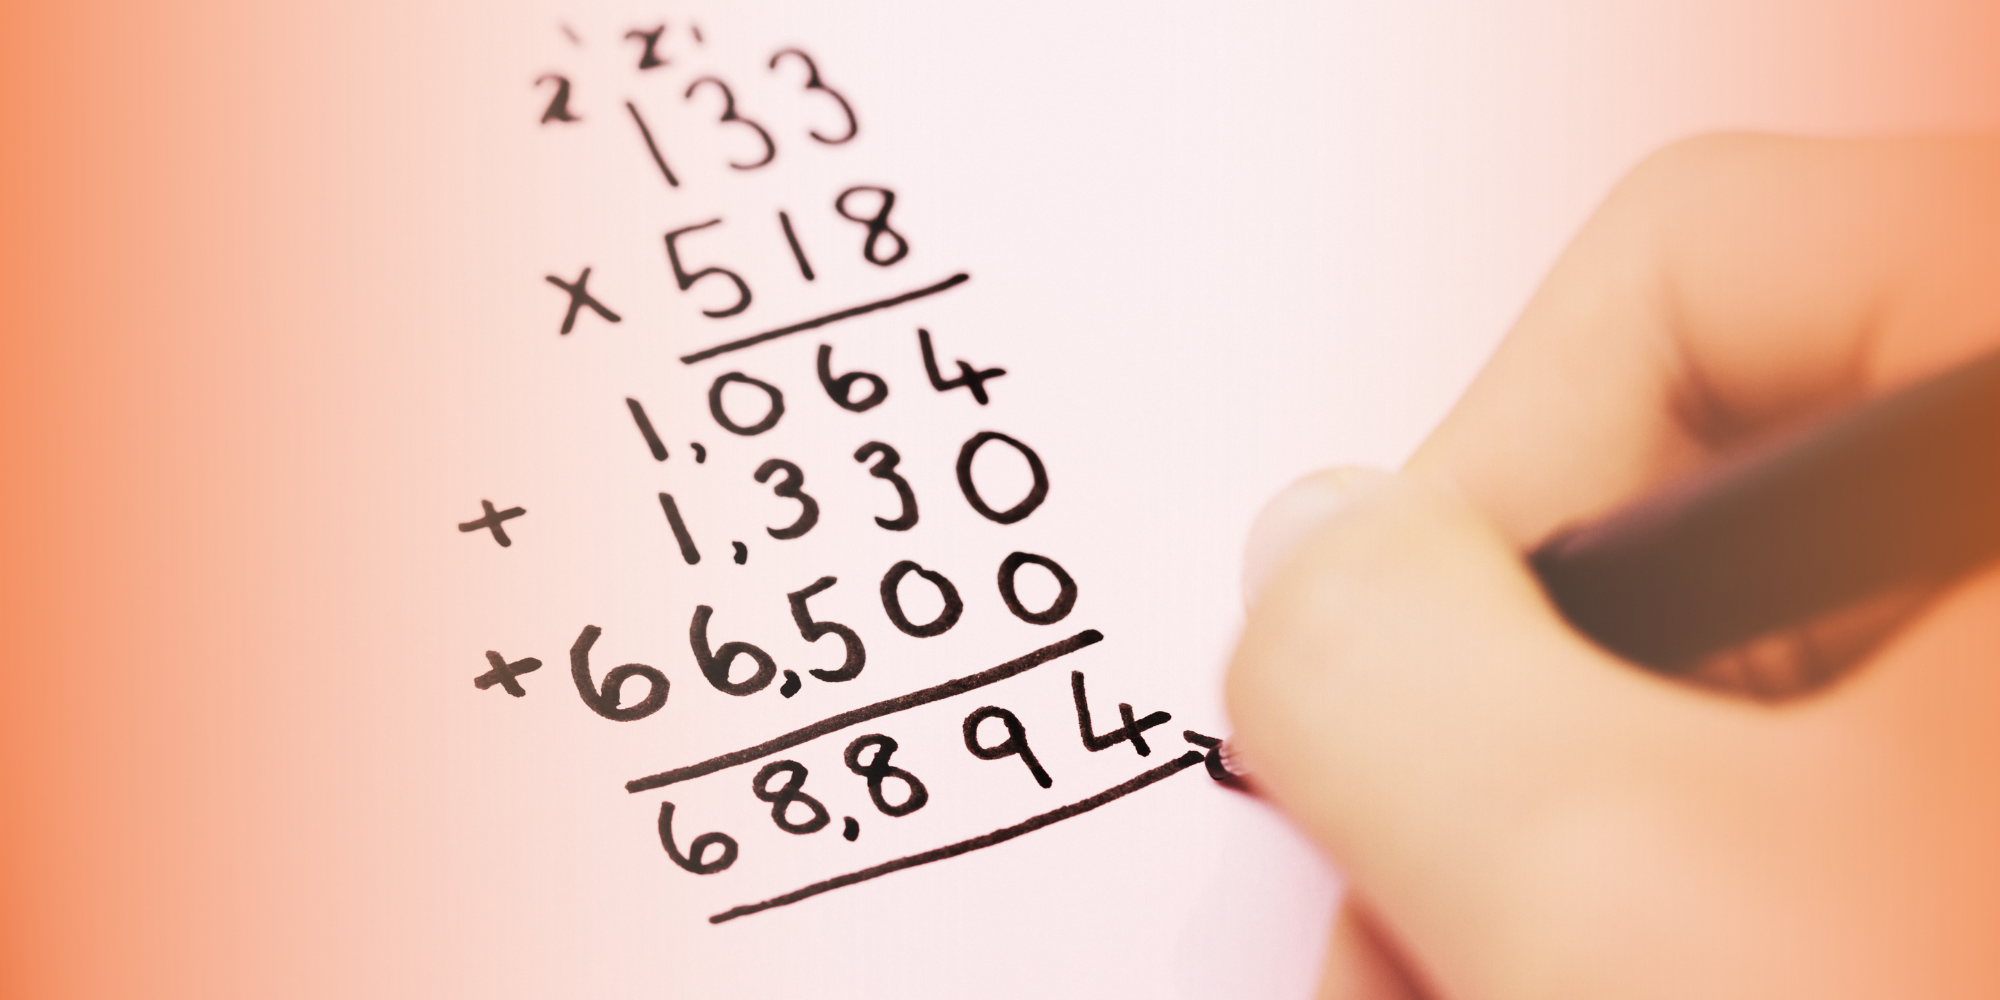 मुलांमध्ये गणिताची आवड निर्माण करण्यासाठीचे ३ सोपे उपाय